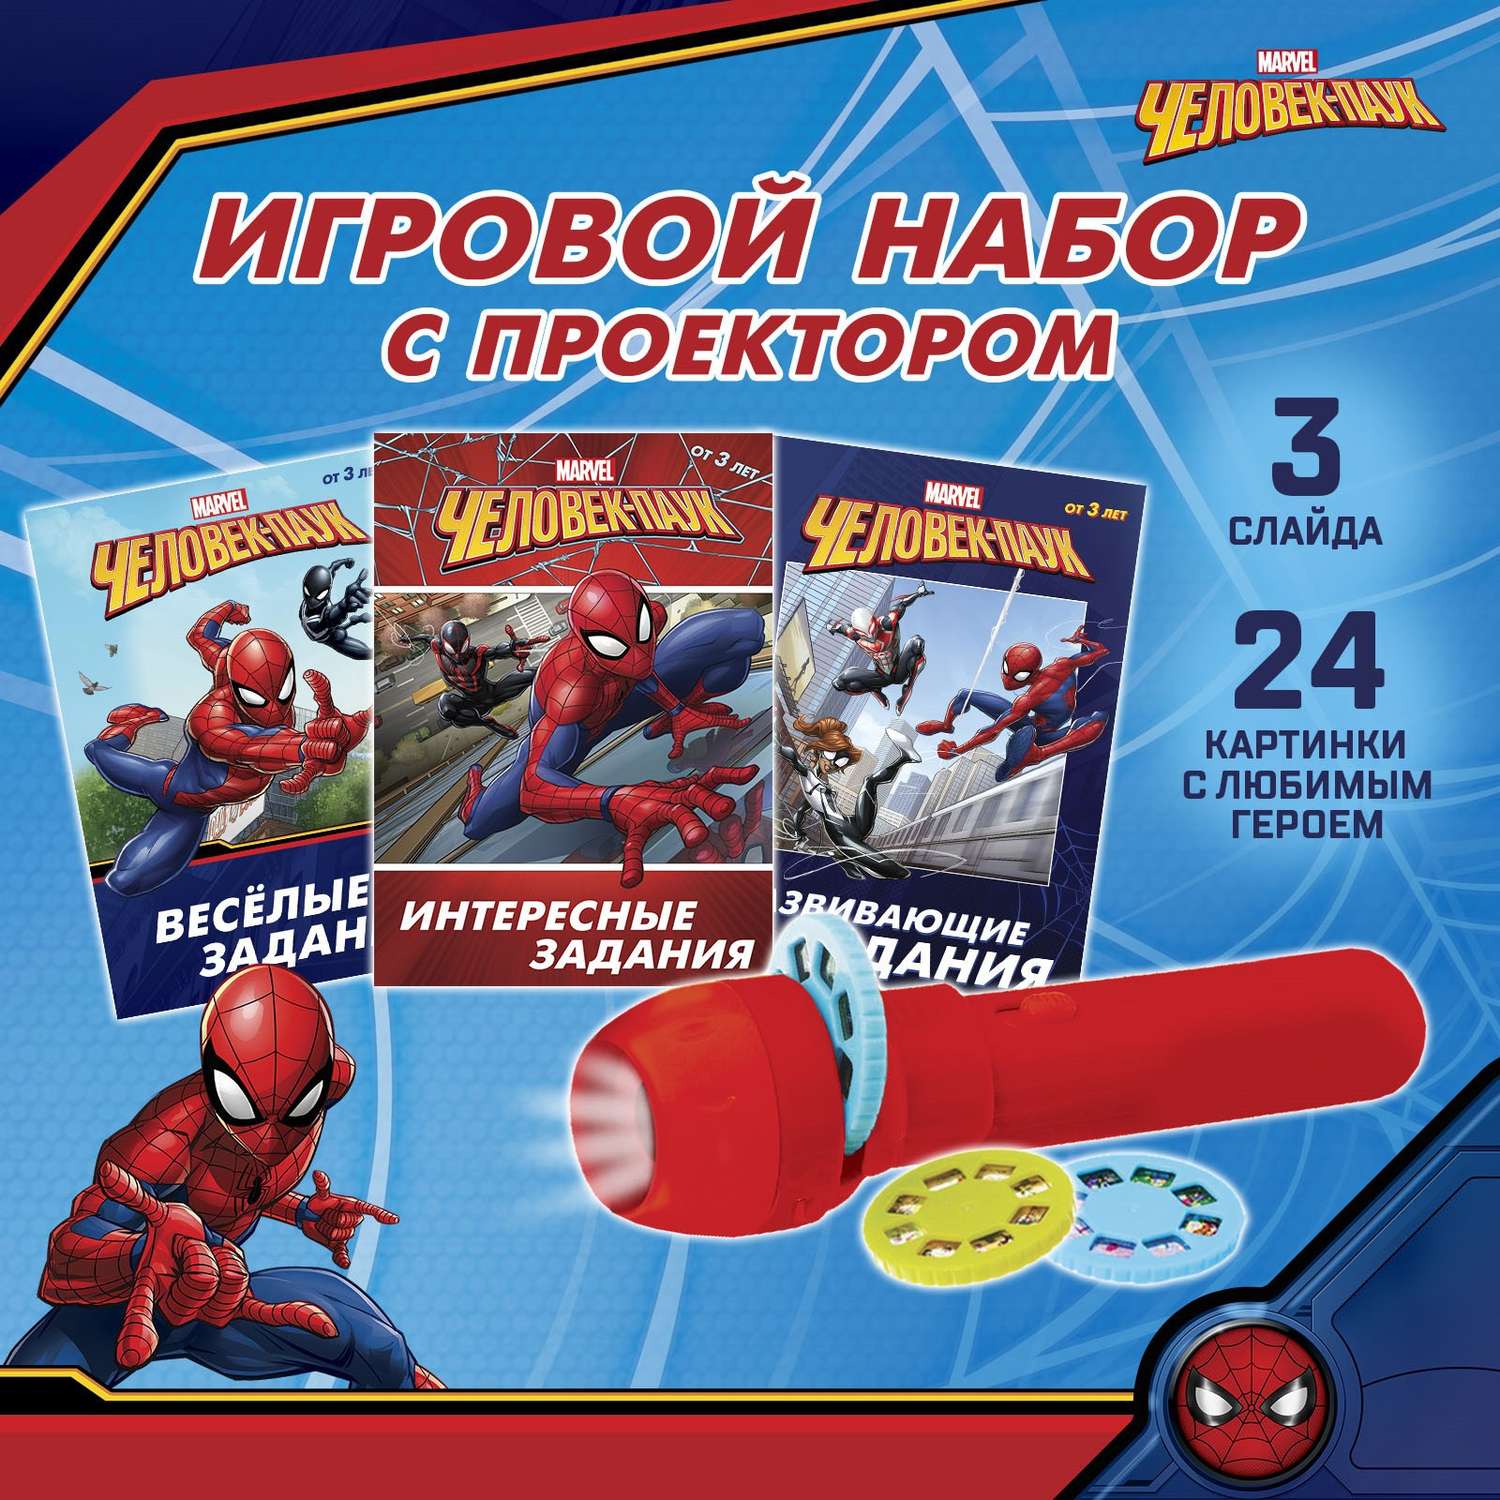 Игровой MARVEL набор с проектором «Человек-паук» 3 книжки - фото 1